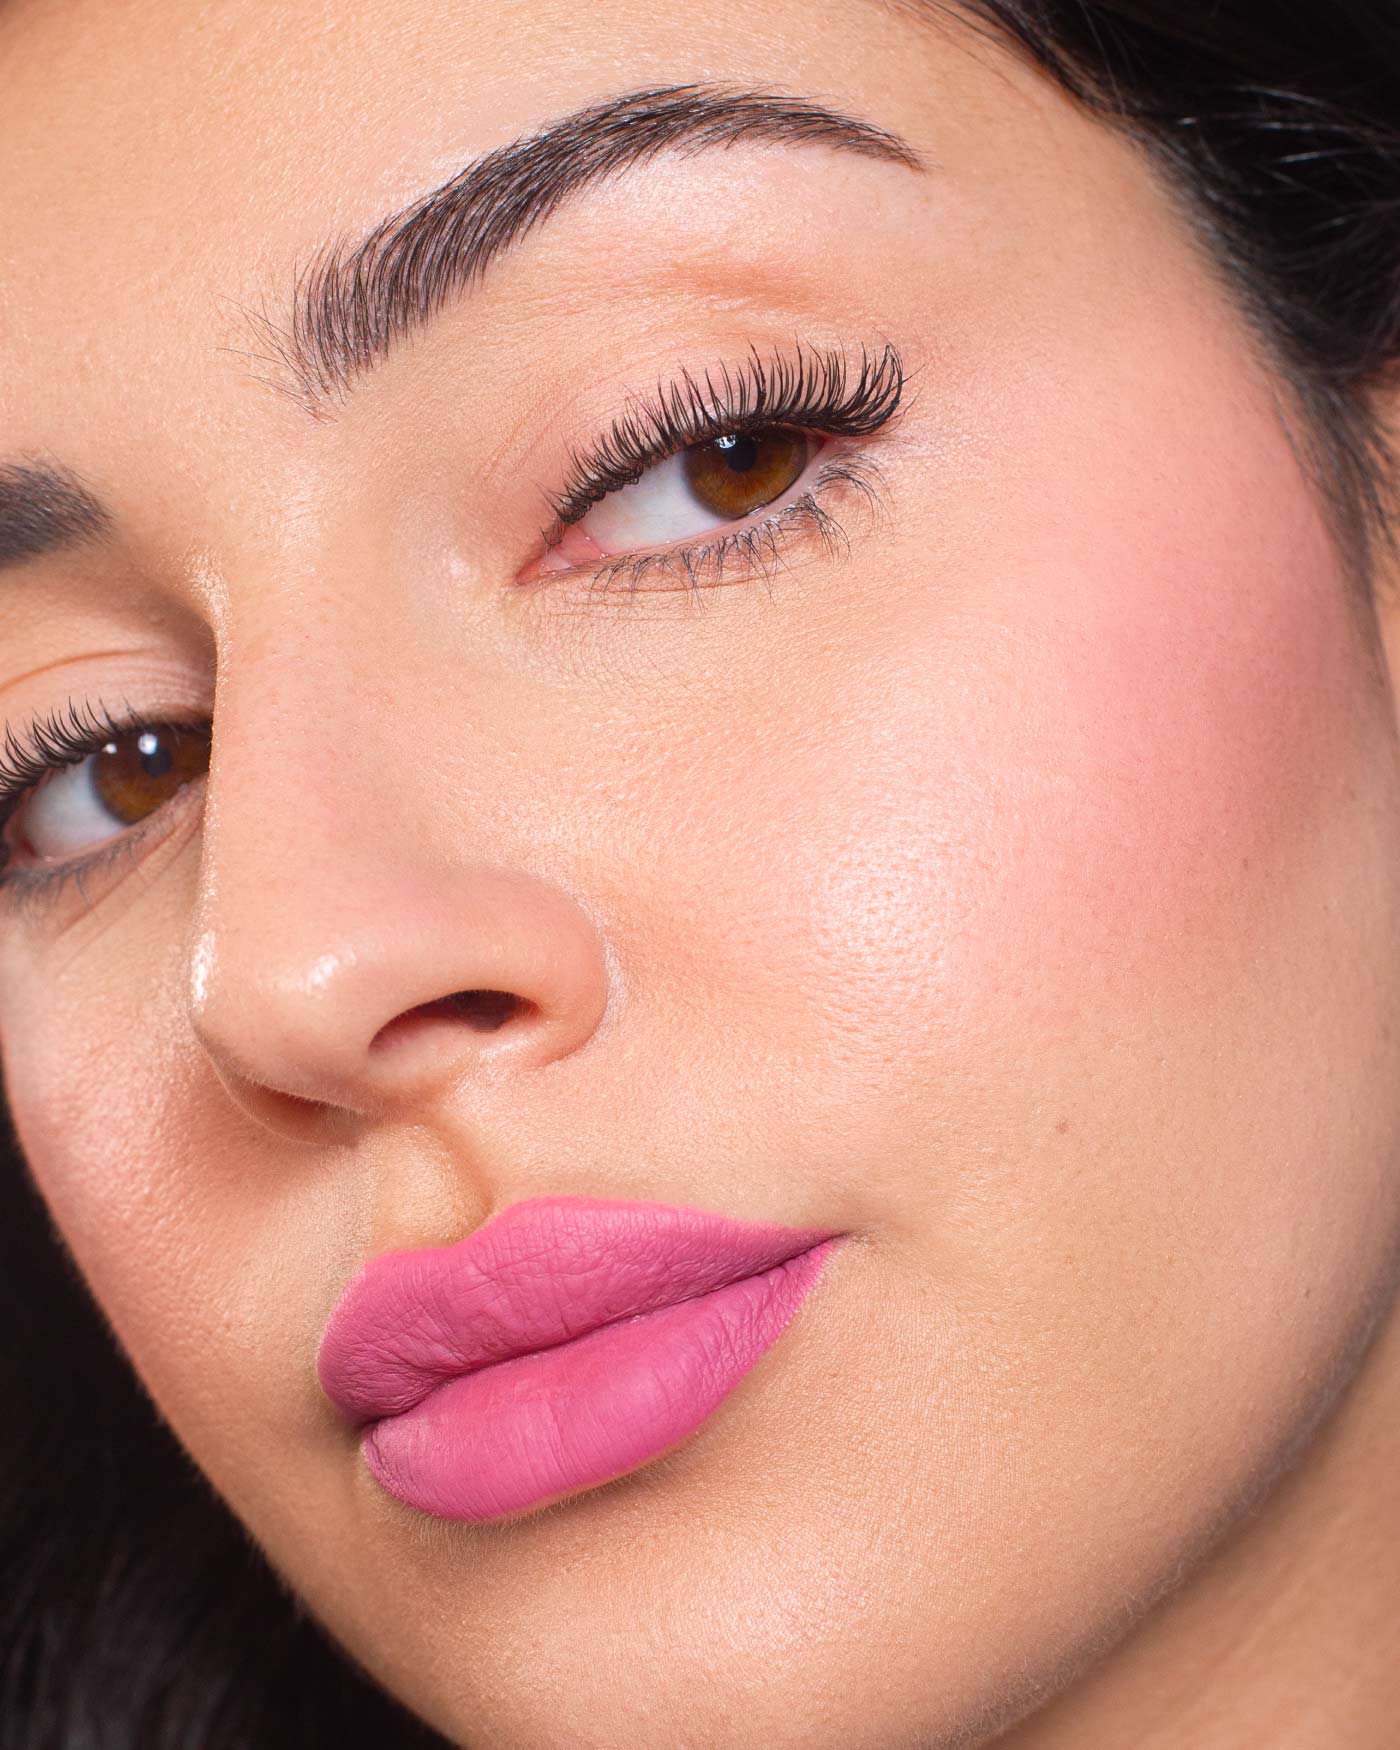 HYPNOTIZE LIQUID LIP & CHEEK - Lips - Astra Make-Up